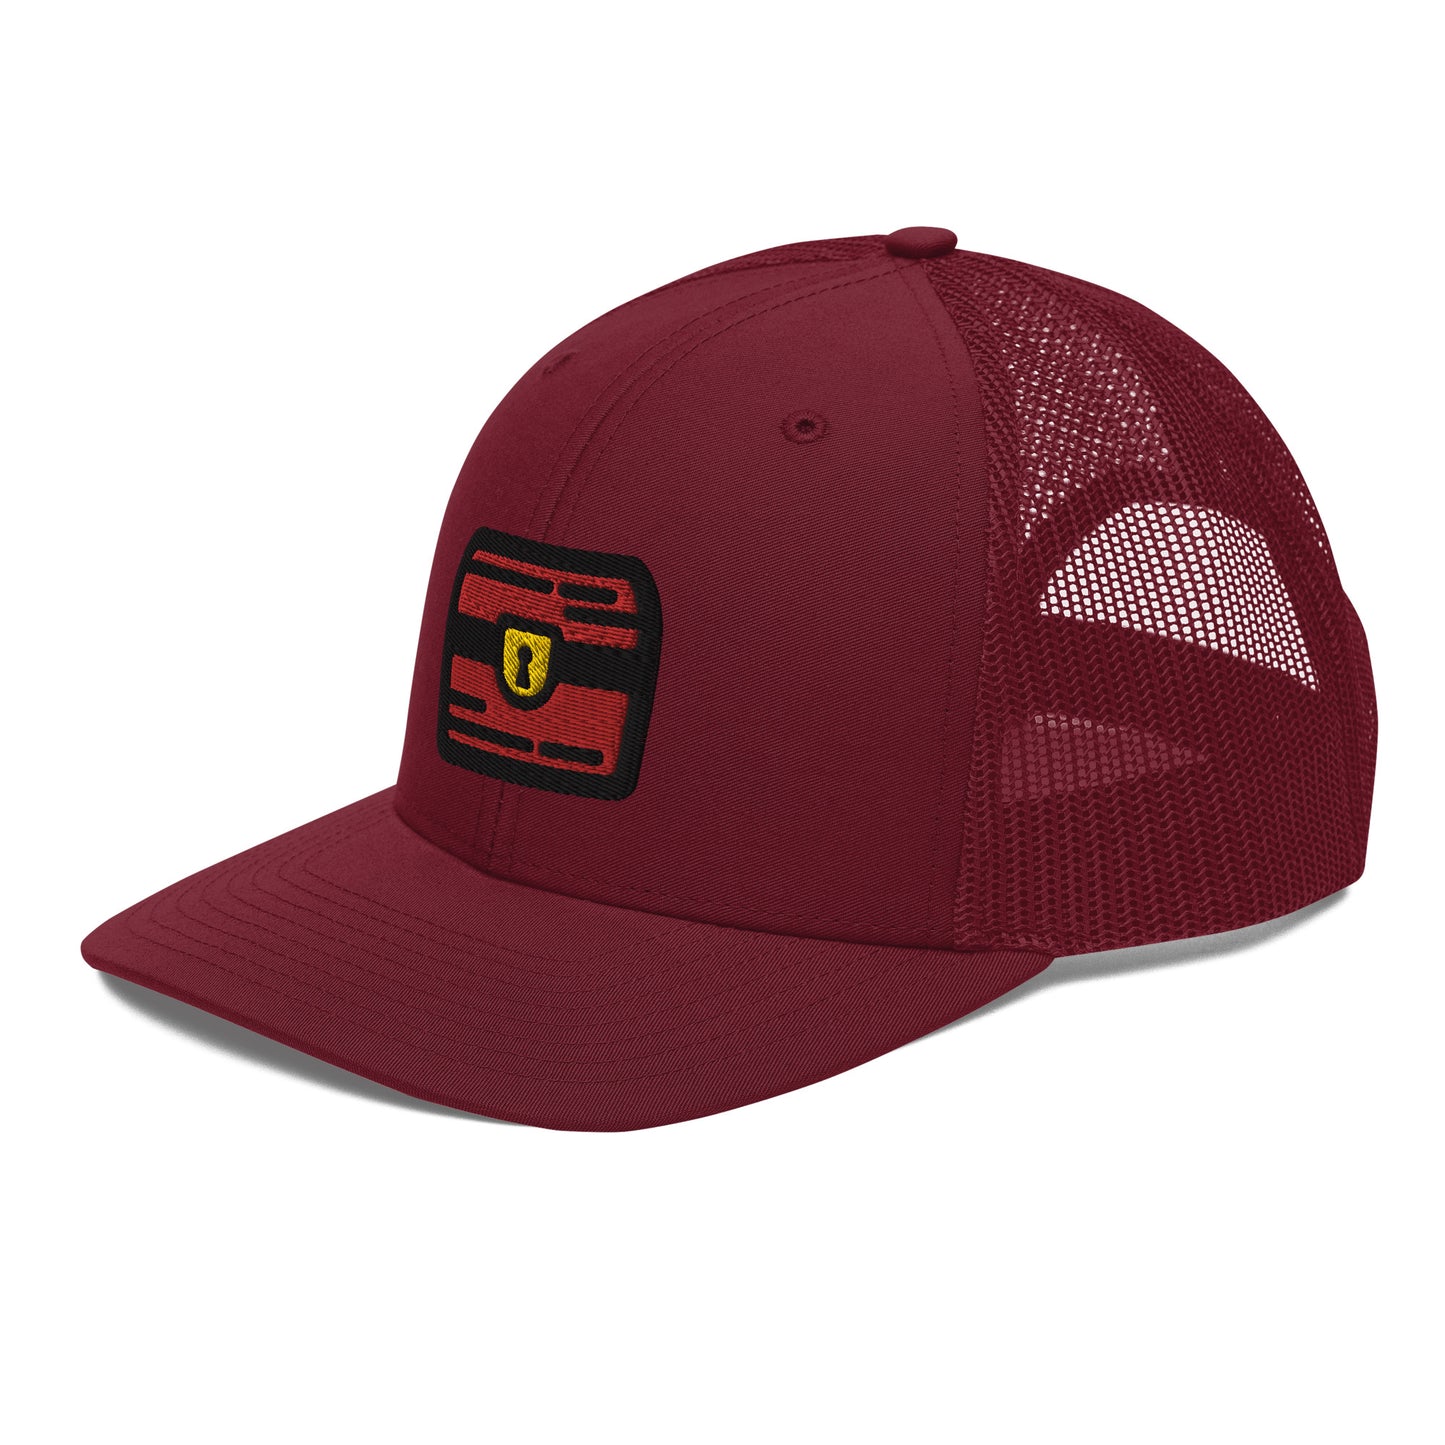 Trucker Hat - Full Color